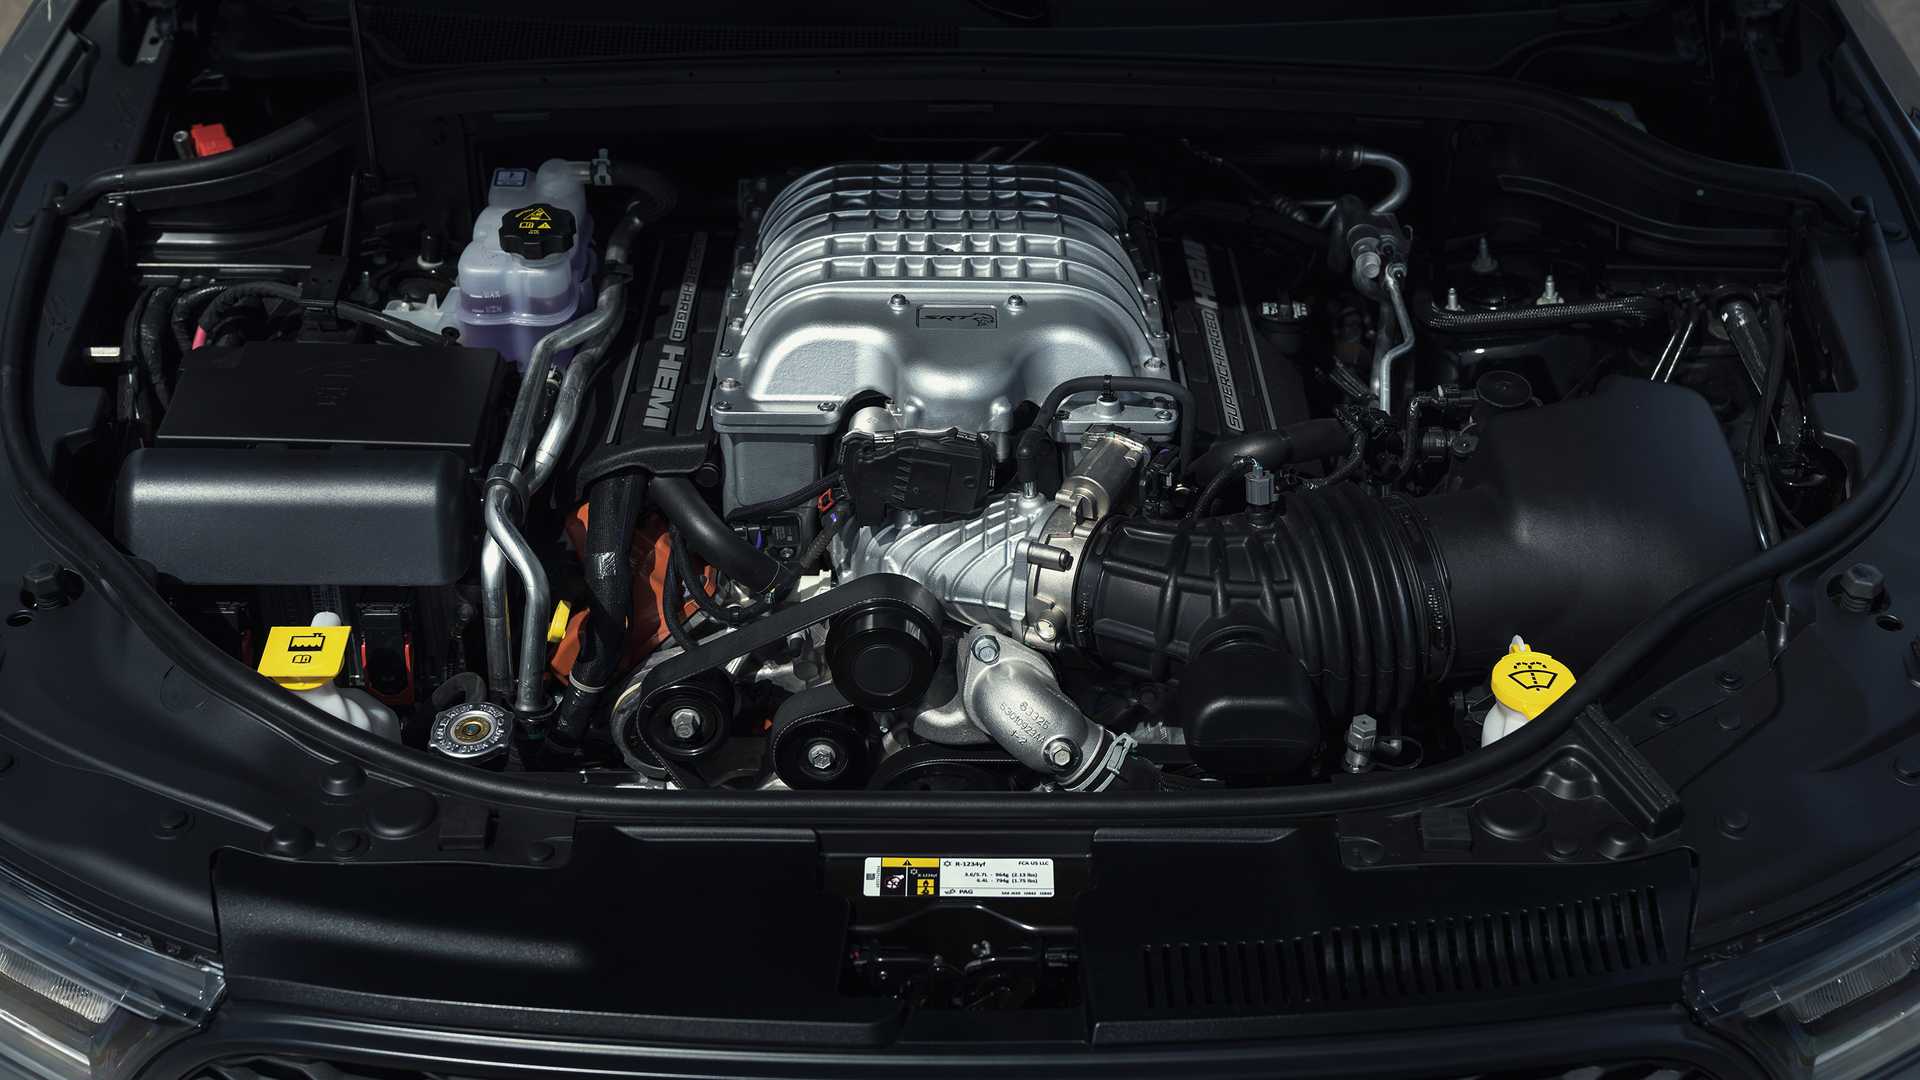 دودج تكشف عن دورانجو SRT هيلكات 2021 كأقوى SUV في العالم 69